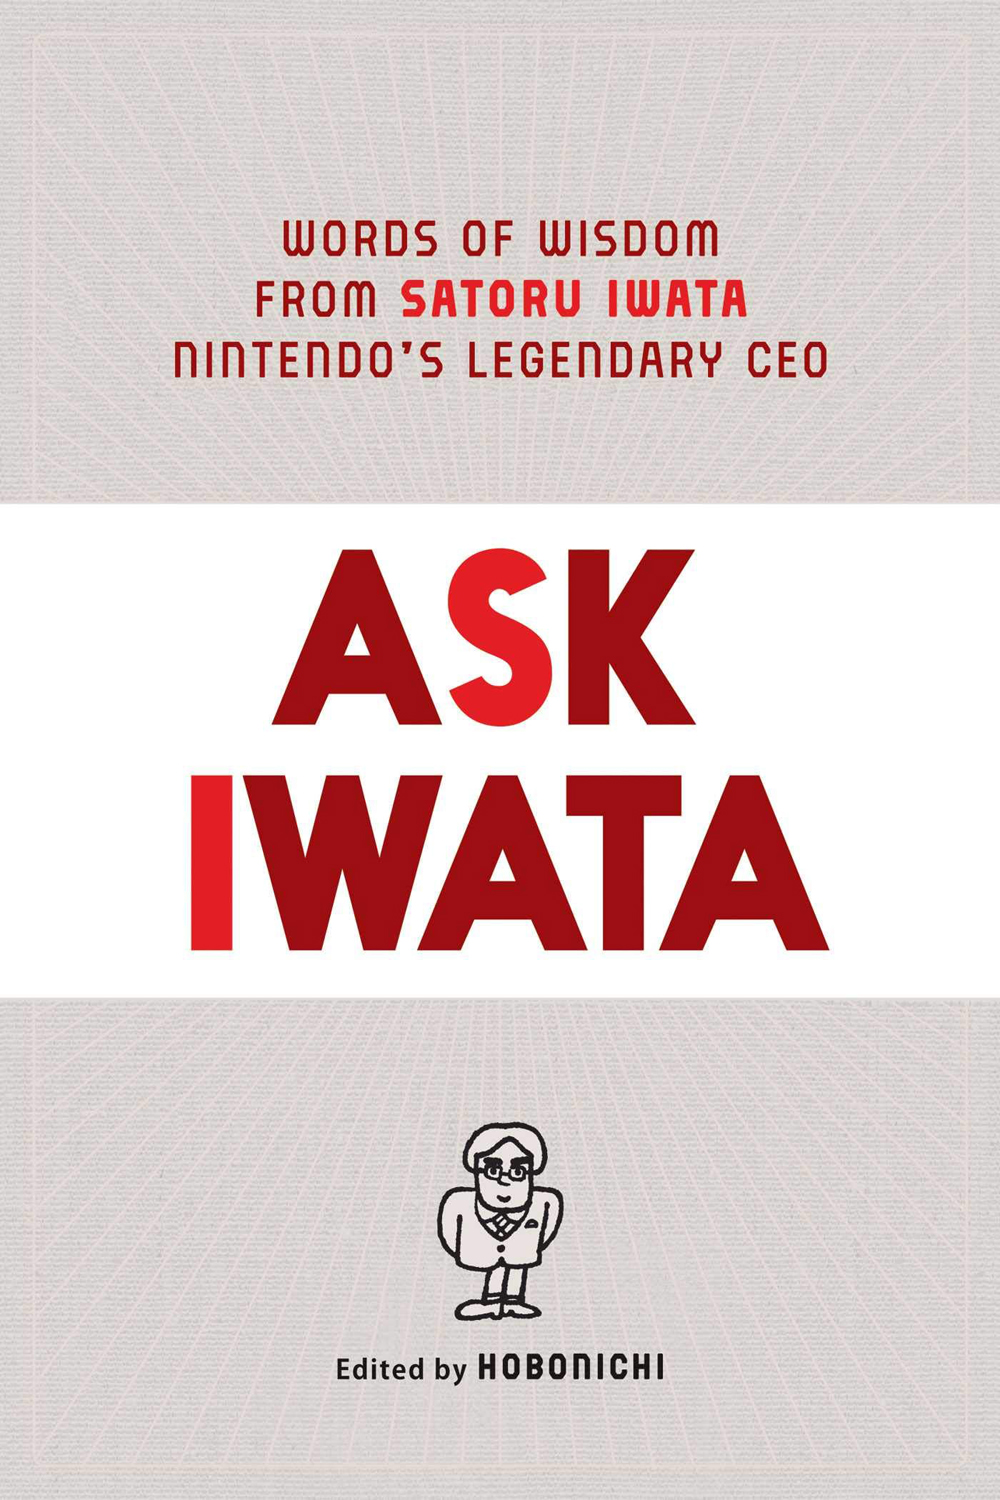 Chiedi a Iwata: Words of Wisdom di Satoru Iwata, il leggendario CEO di Nintendo